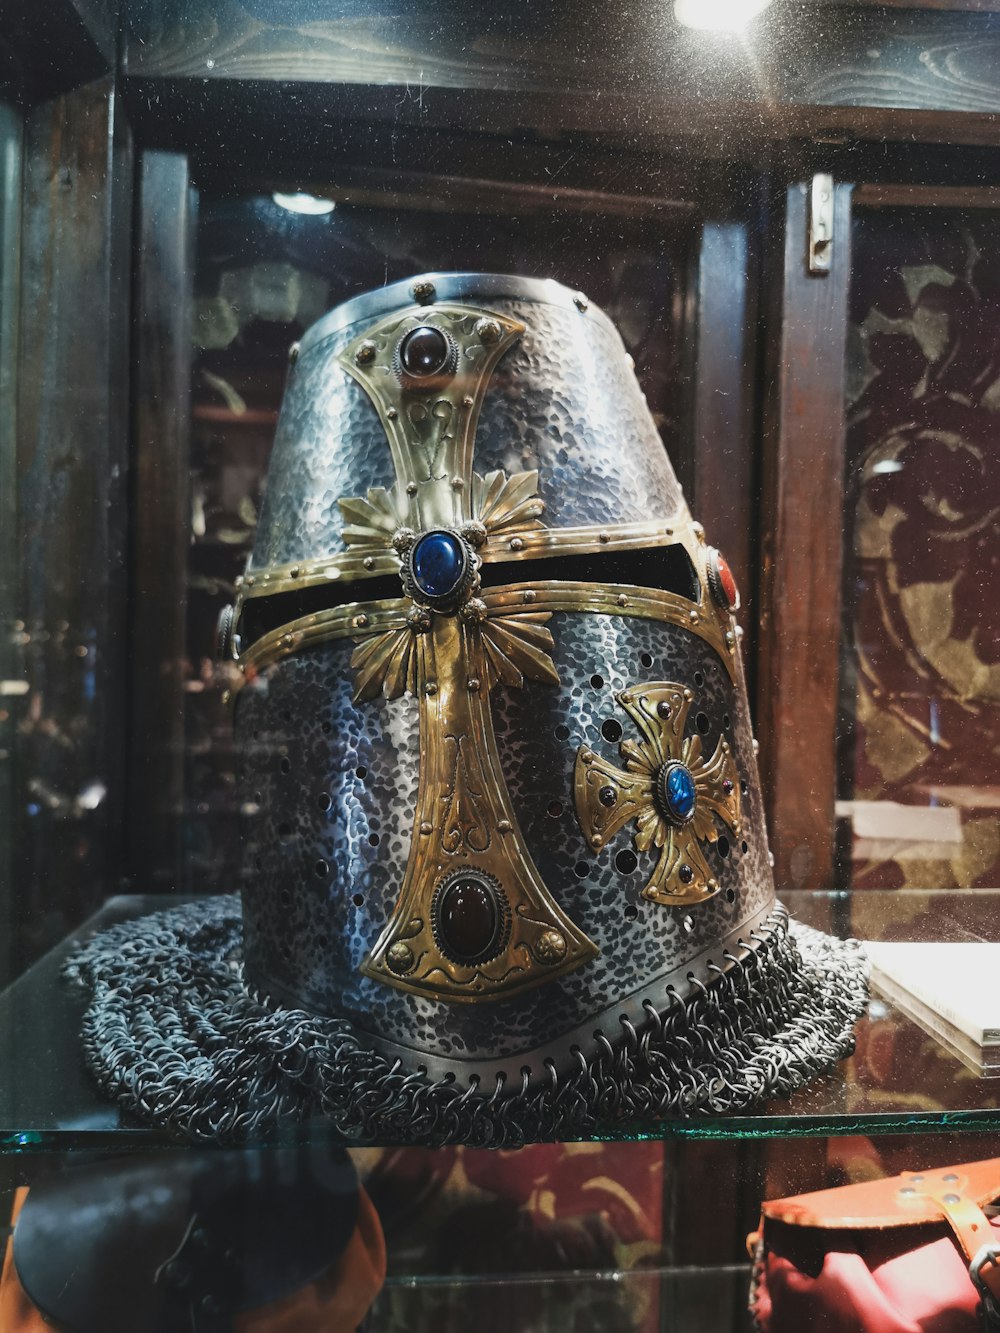 gray helmet on display